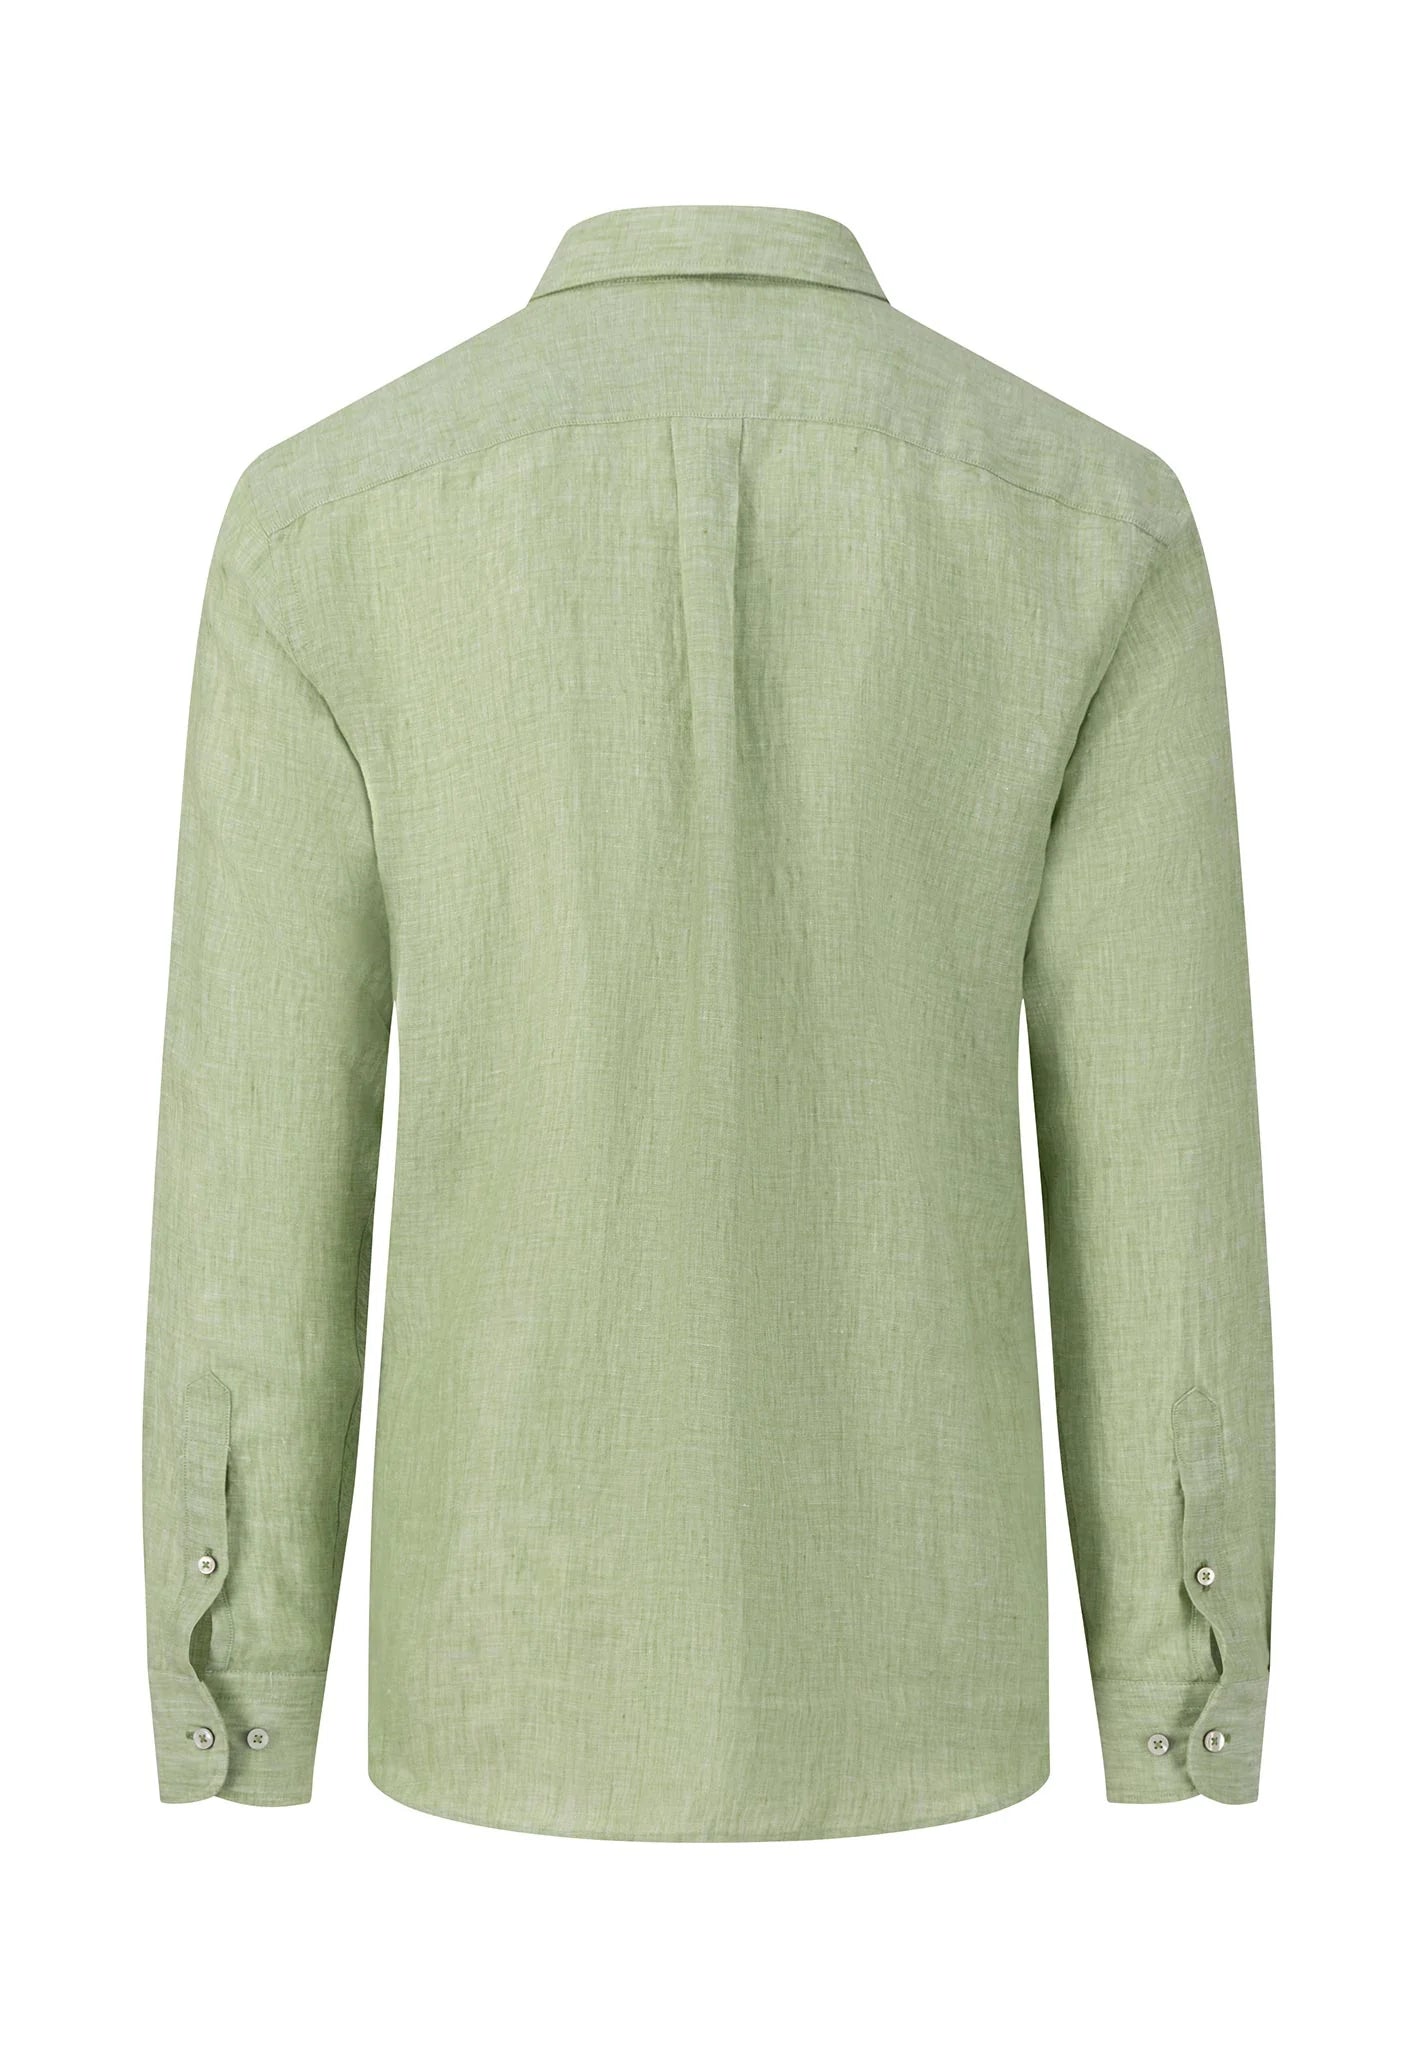 FYNCH HATTON Pure Linen Shirt - Men's – Leaf Green